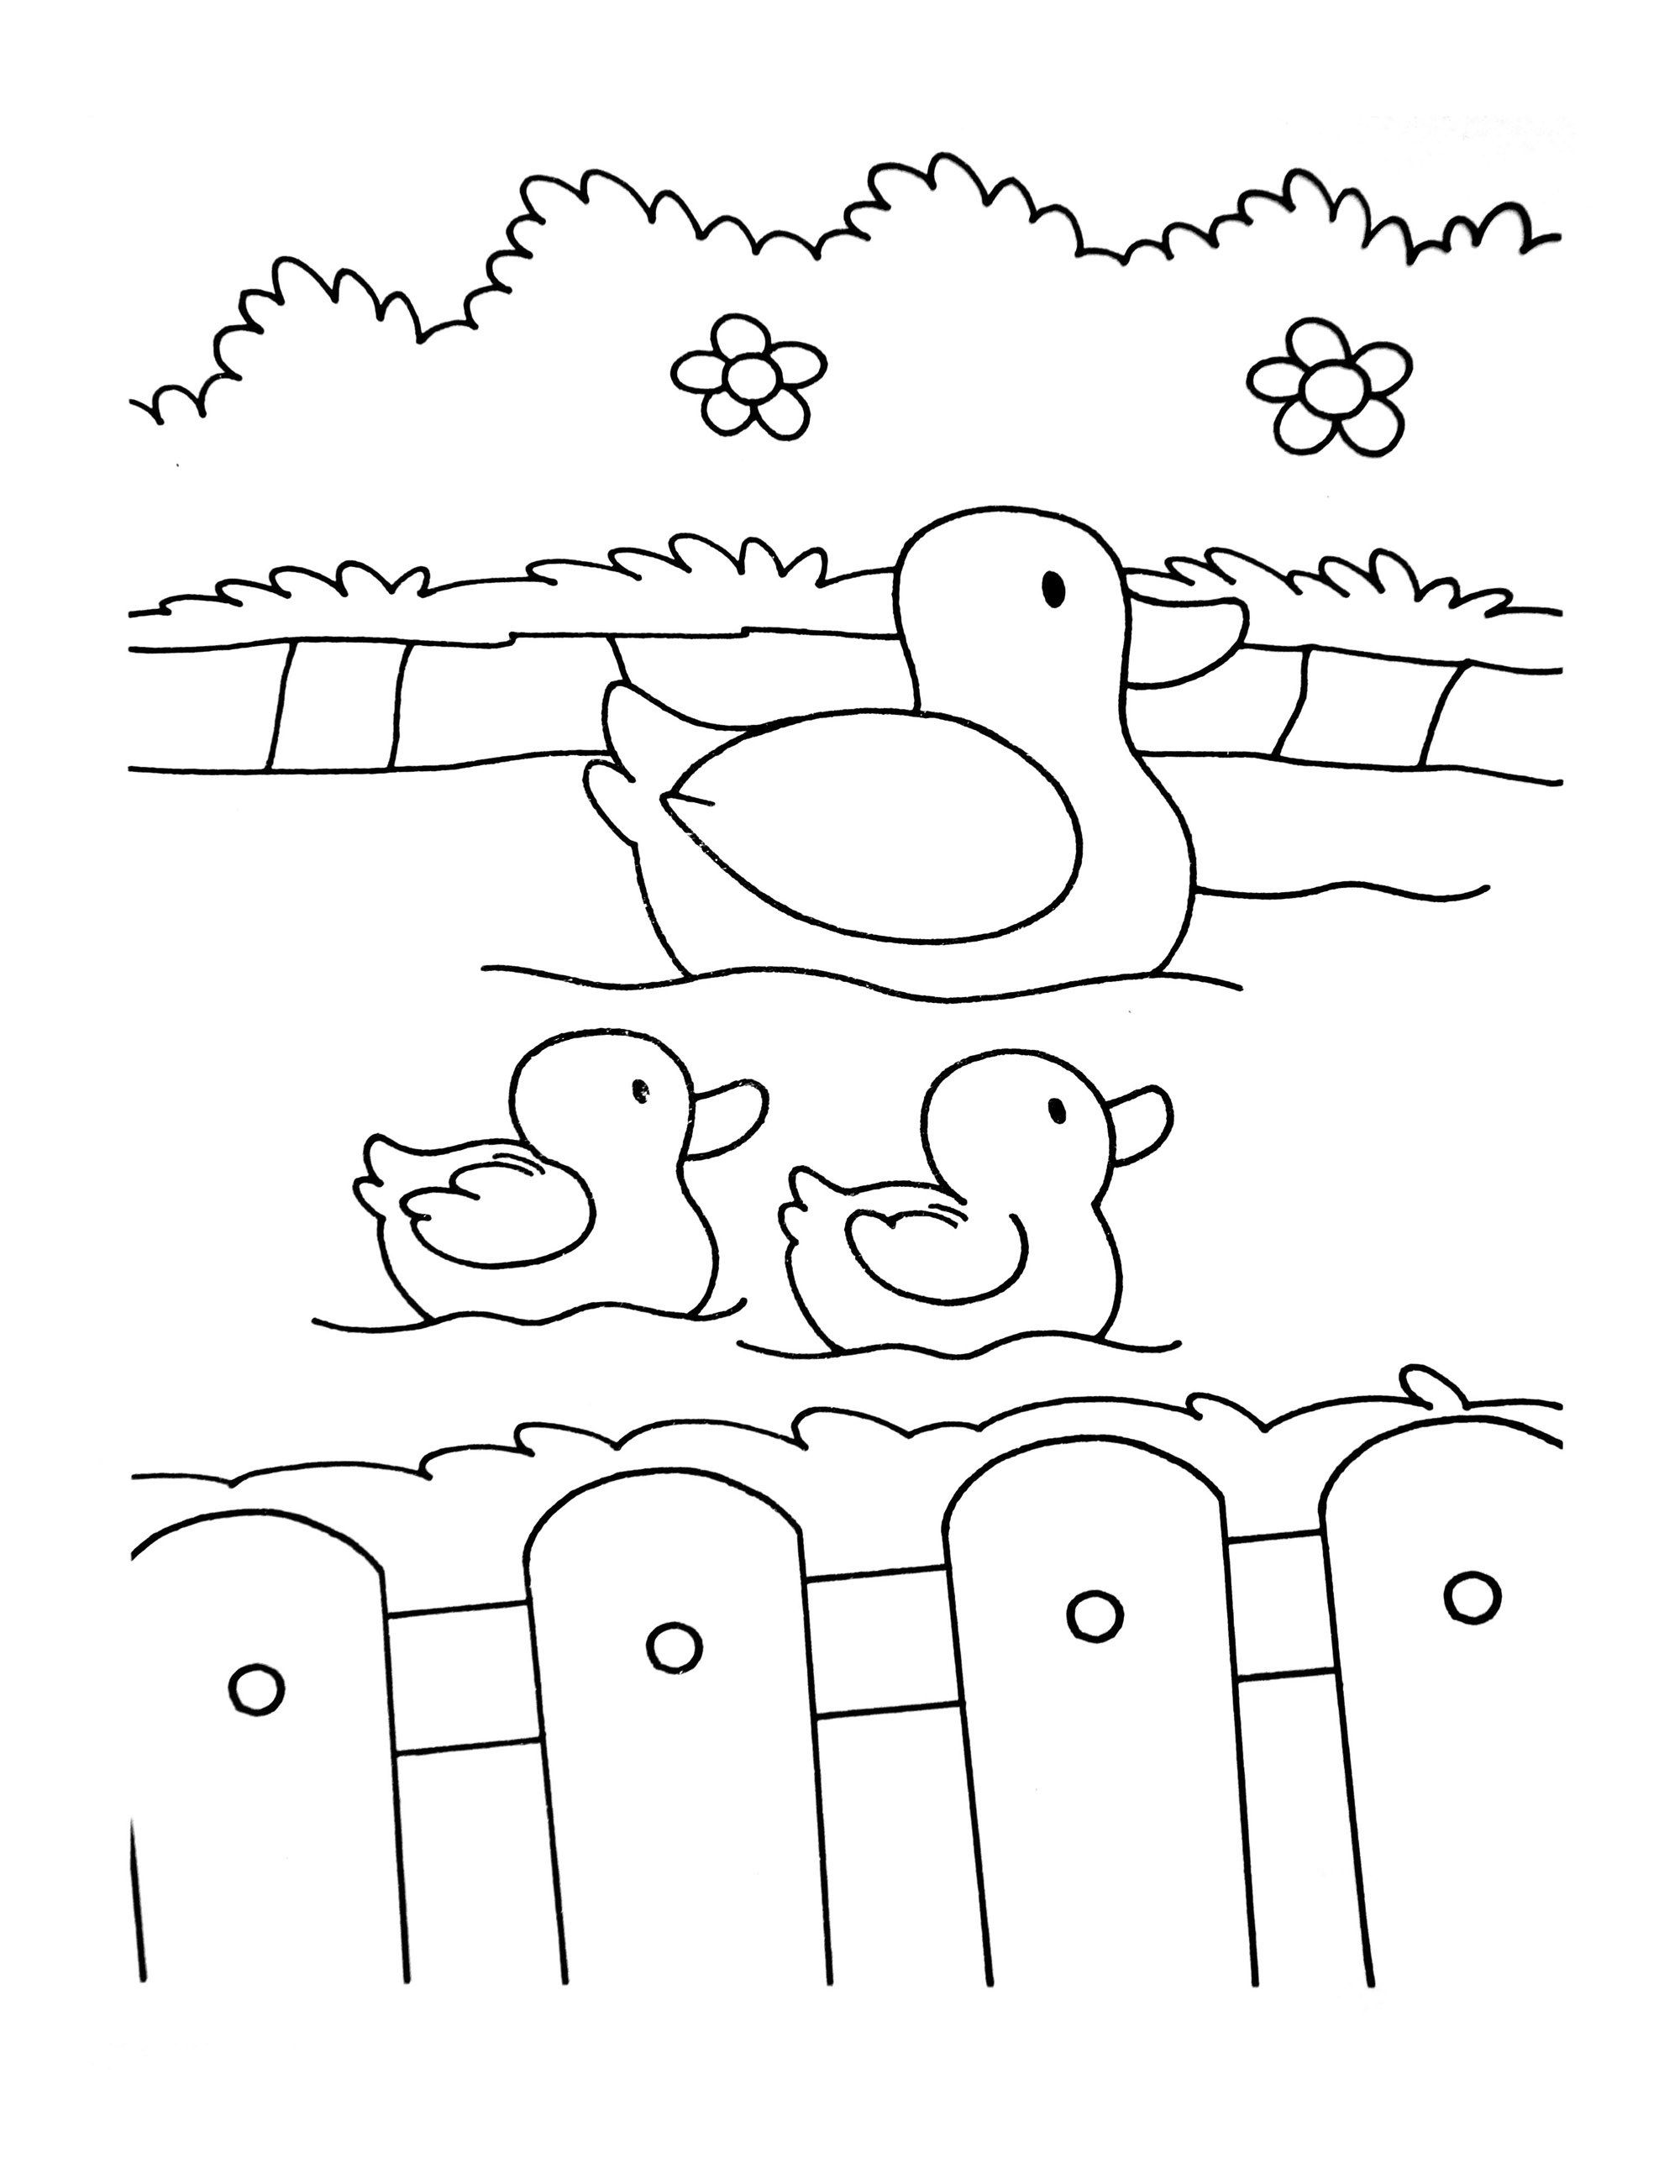 Dibujo de la granja para colorear, fácil para los niños